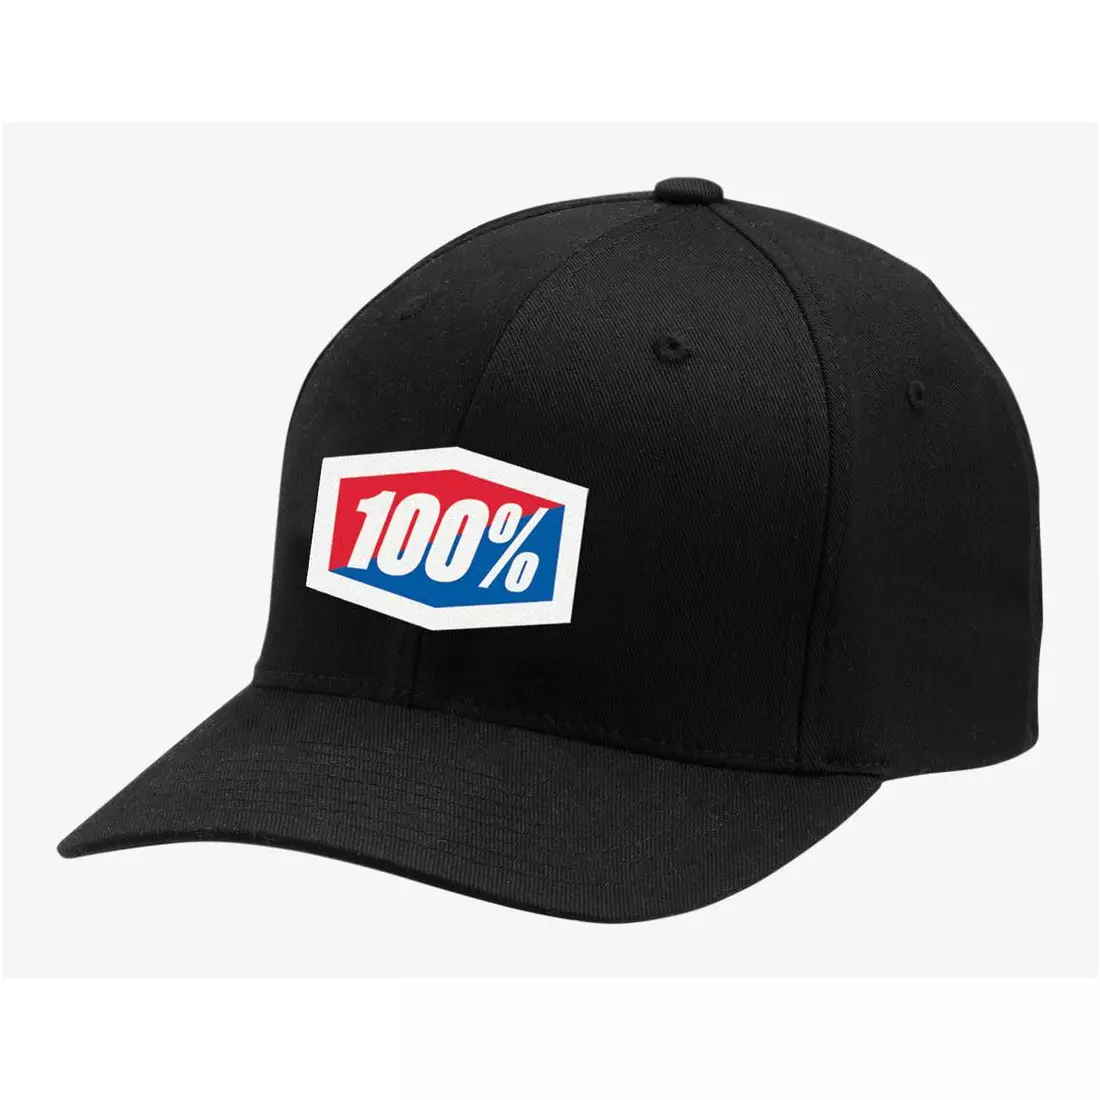 100% czapka z daszkiem official x-Fit  flexfit hat black STO-20037-001-17